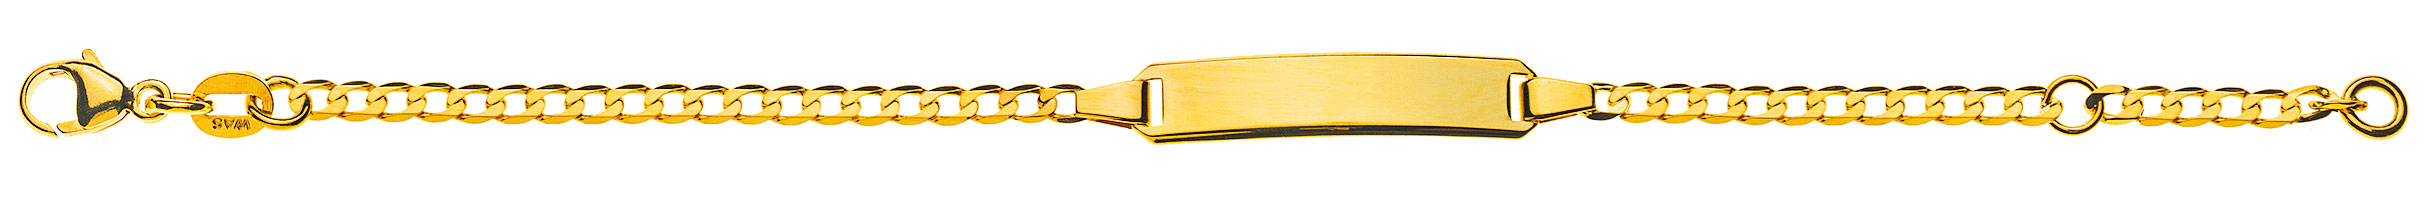 AURONOS Prestige ID-Bracelet en or jaune 18k Chaîne blindée diamantée 18cm